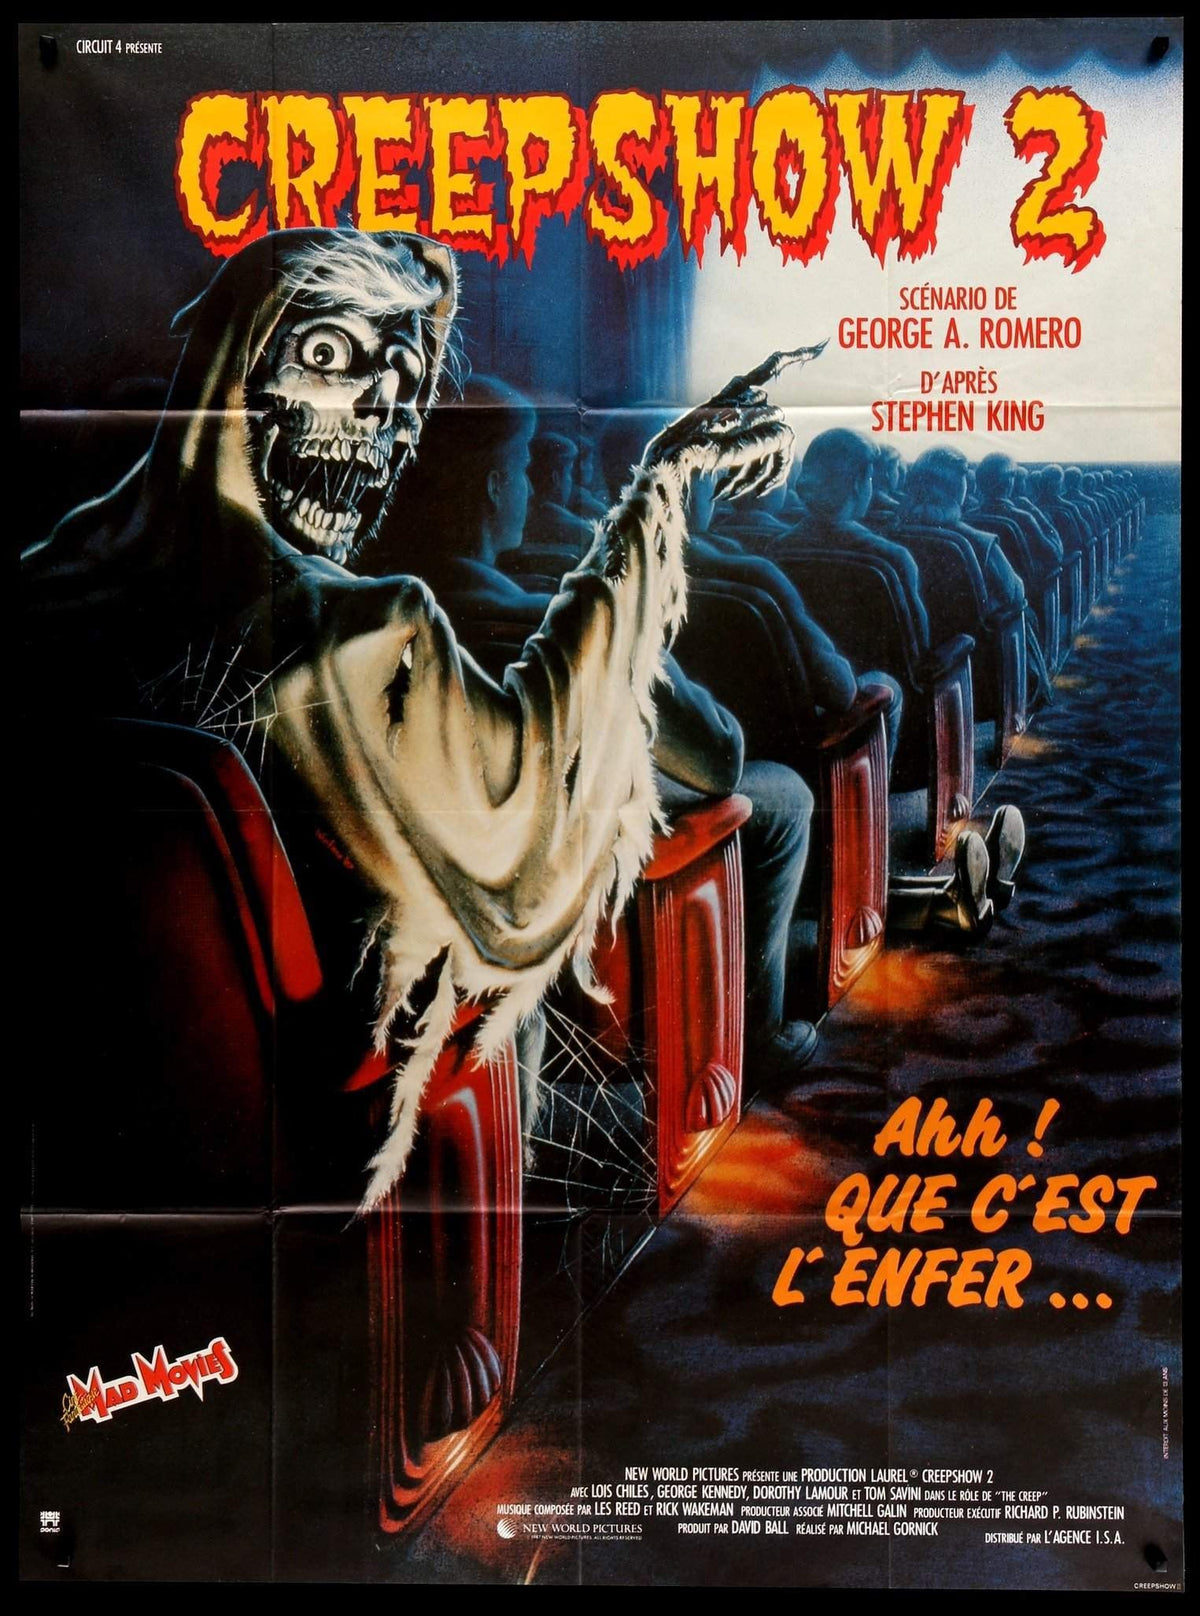 Creepshow 2 (1987) original movie poster for sale at Original Film Art